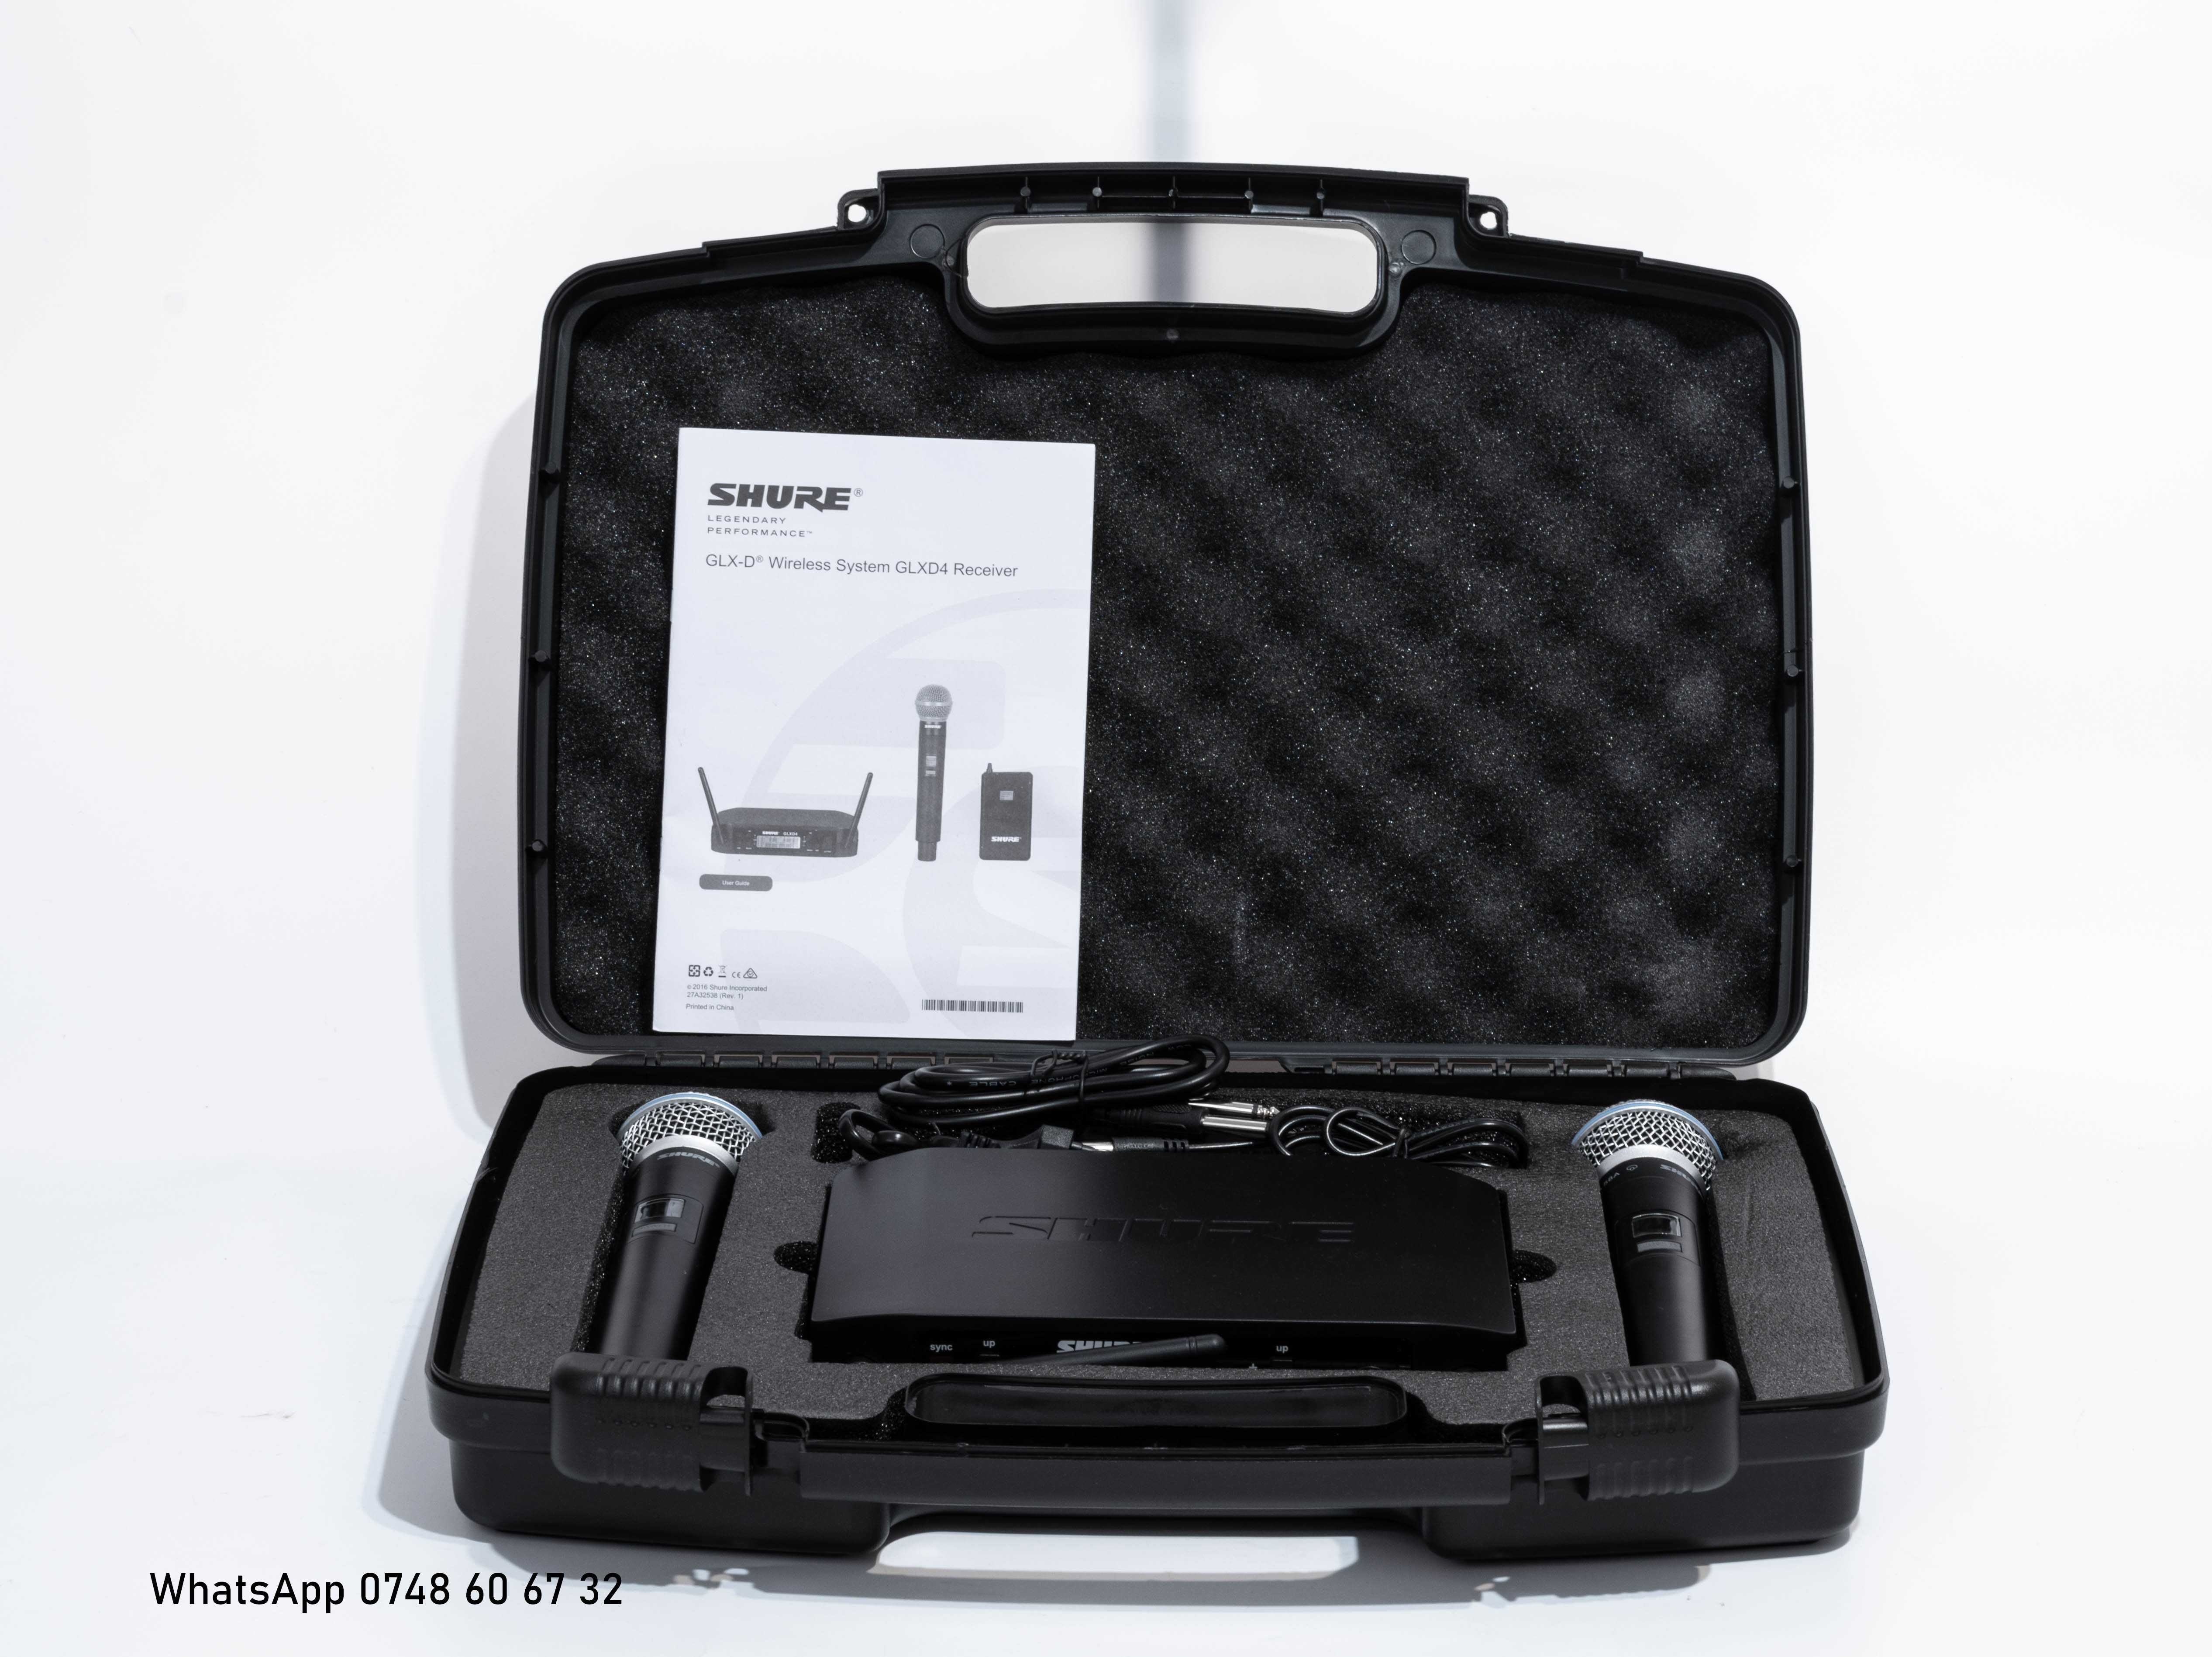 Wireless Shure GLXD4 Beta 58A doua microfoane+CASE (slx qlxd blx ulxd)